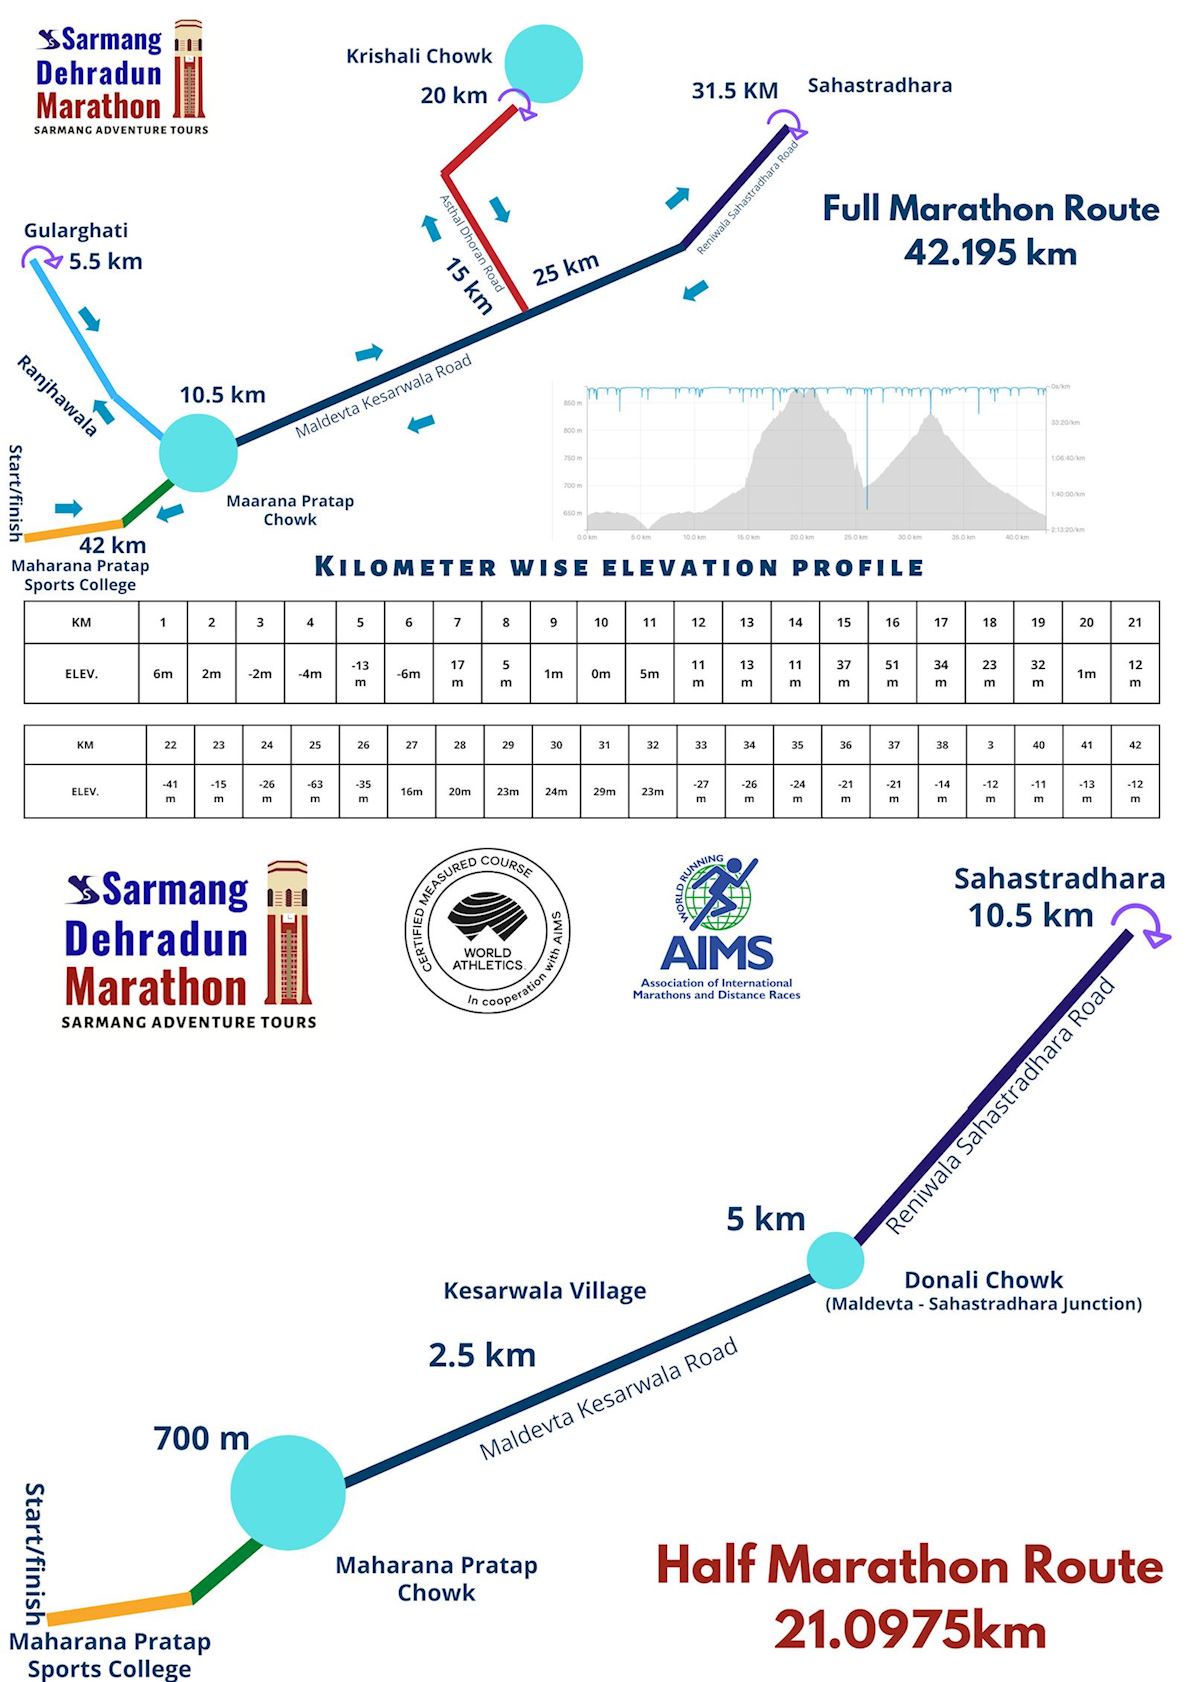 Sarmang Dehradun Marathon Third Edition Route Map